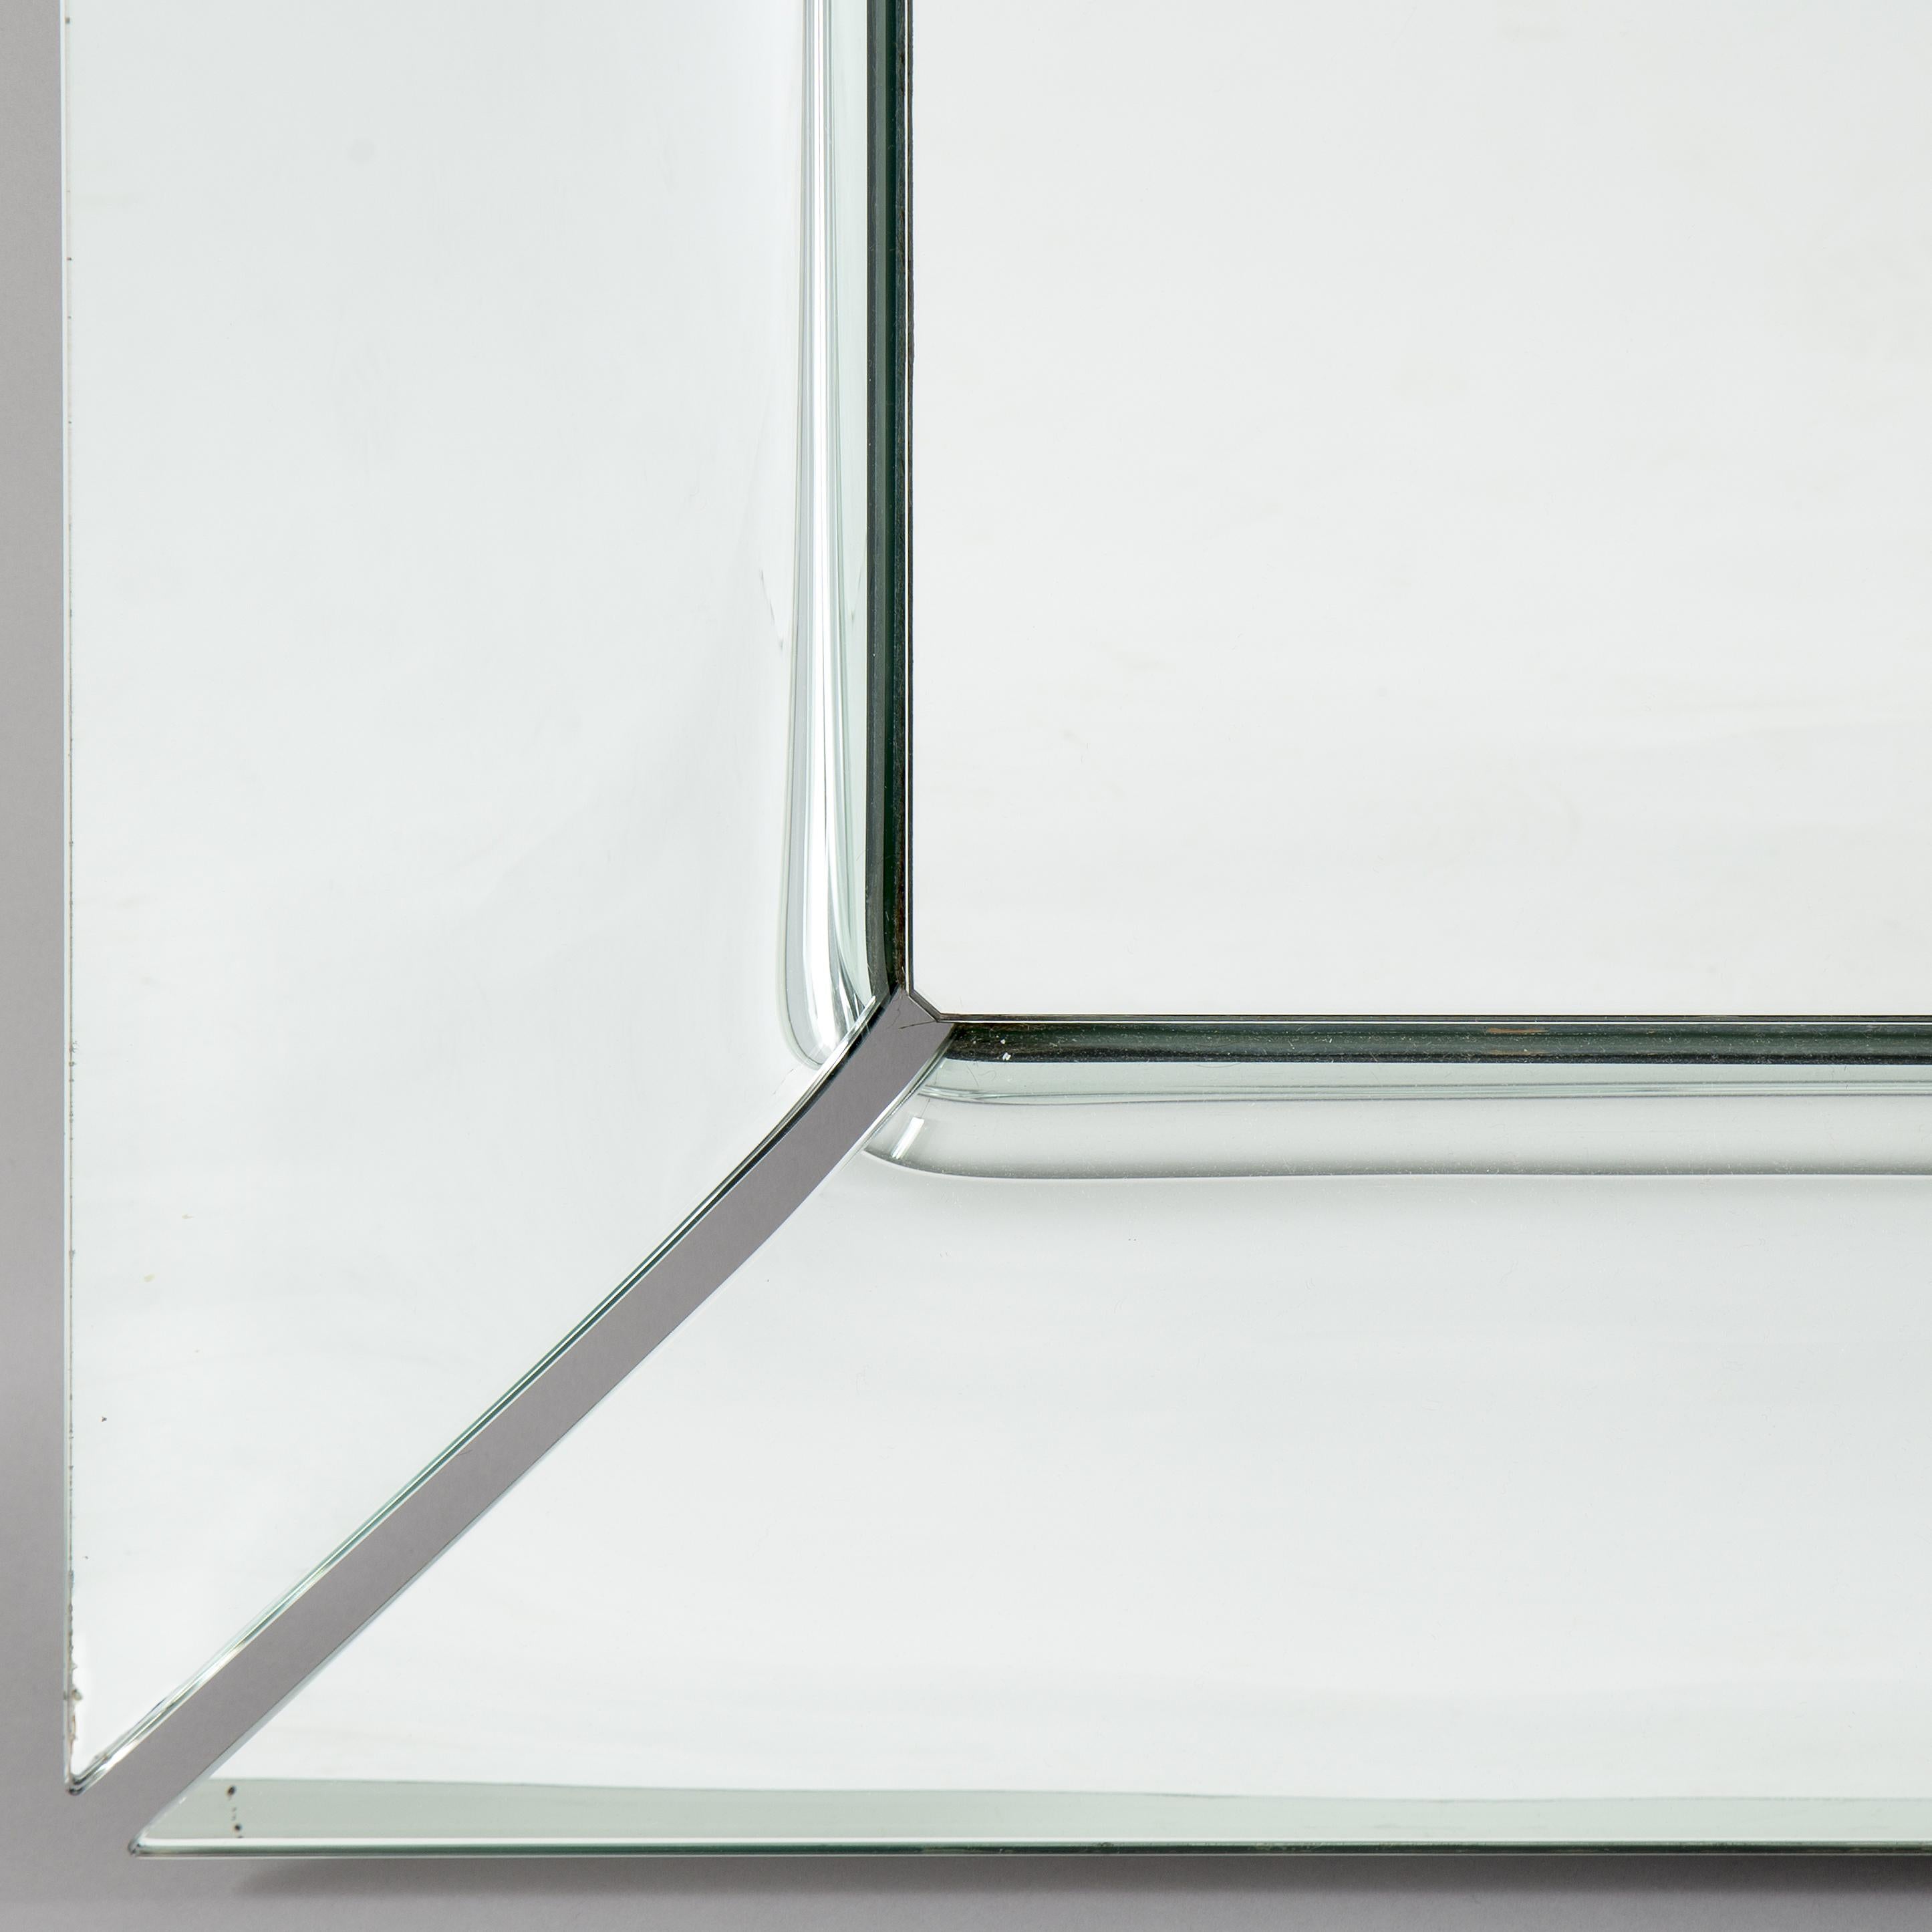 MIROIR EN VERRE BOMBÉ
Miroir sur pied, également disponible en version suspendue, en verre incurvé de 6 mm d'épaisseur, composé de quatre éléments distincts incurvés et désargentés. Également disponible en verre titane semi-réfléchissant ou en verre